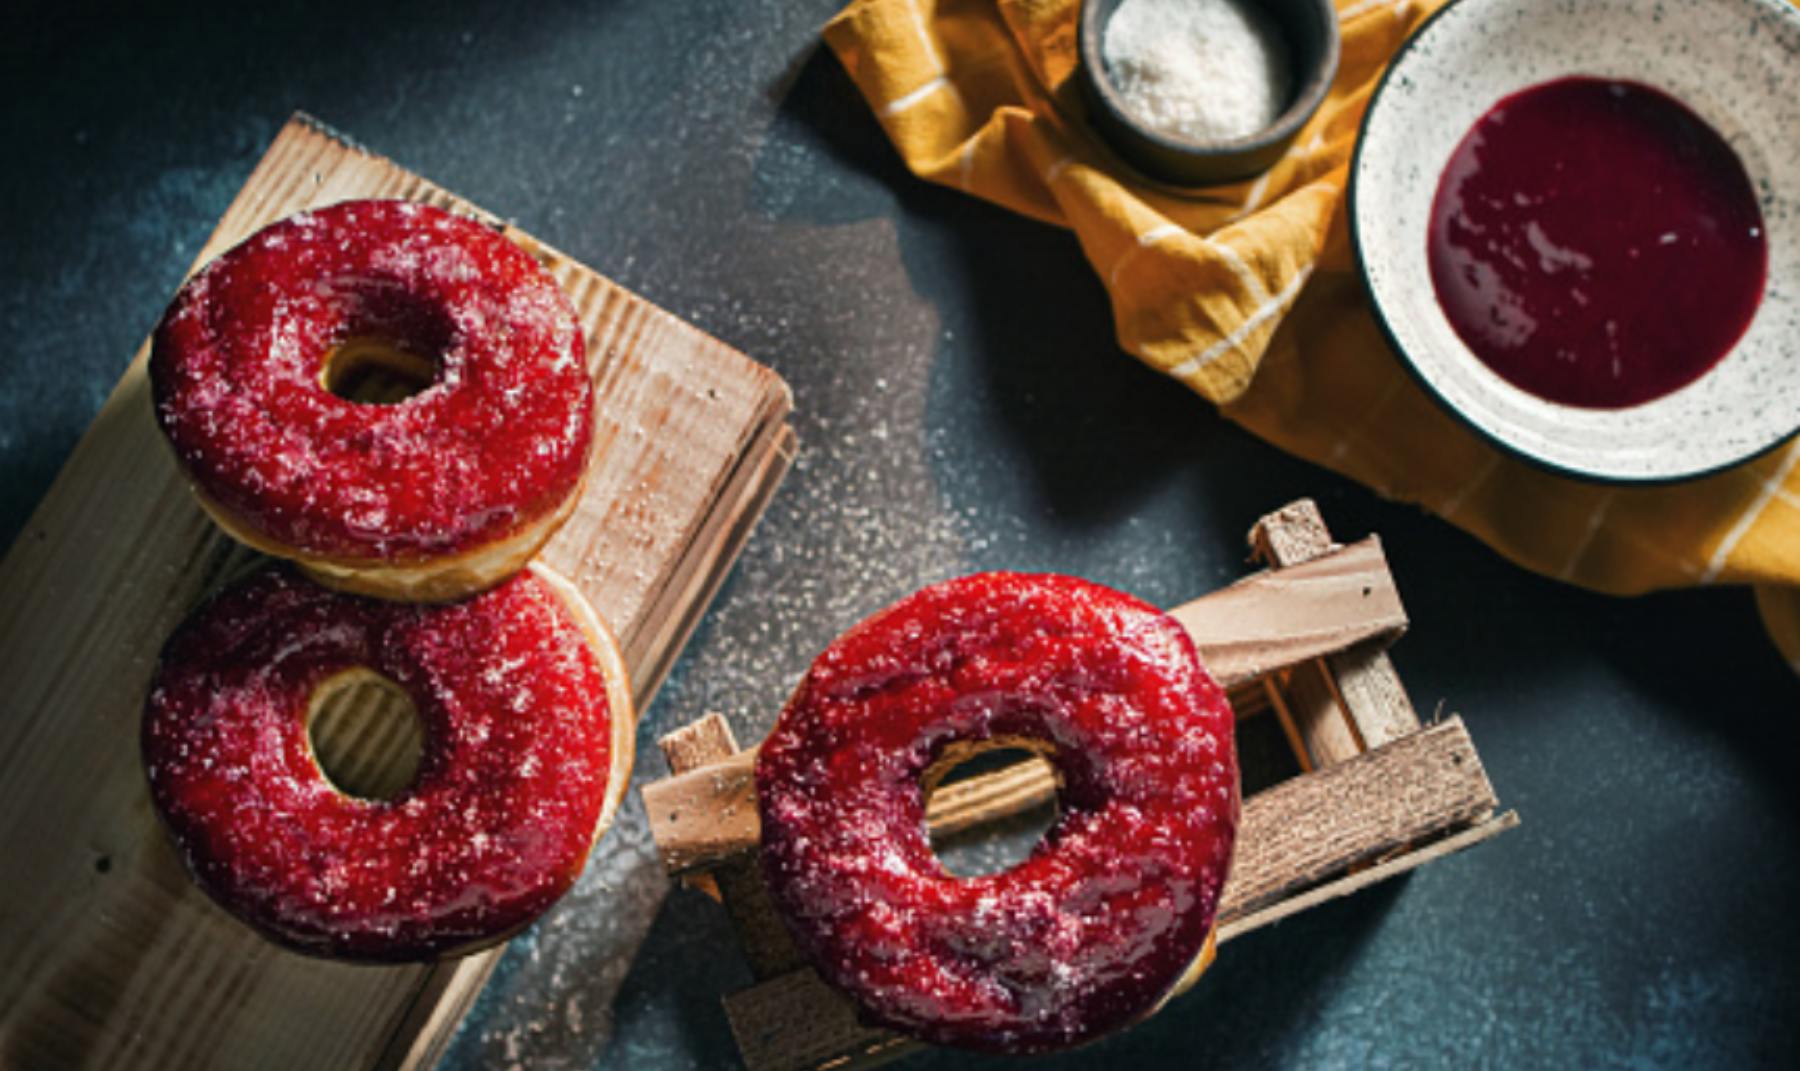 Donuts de moras: receta saludable y fácil